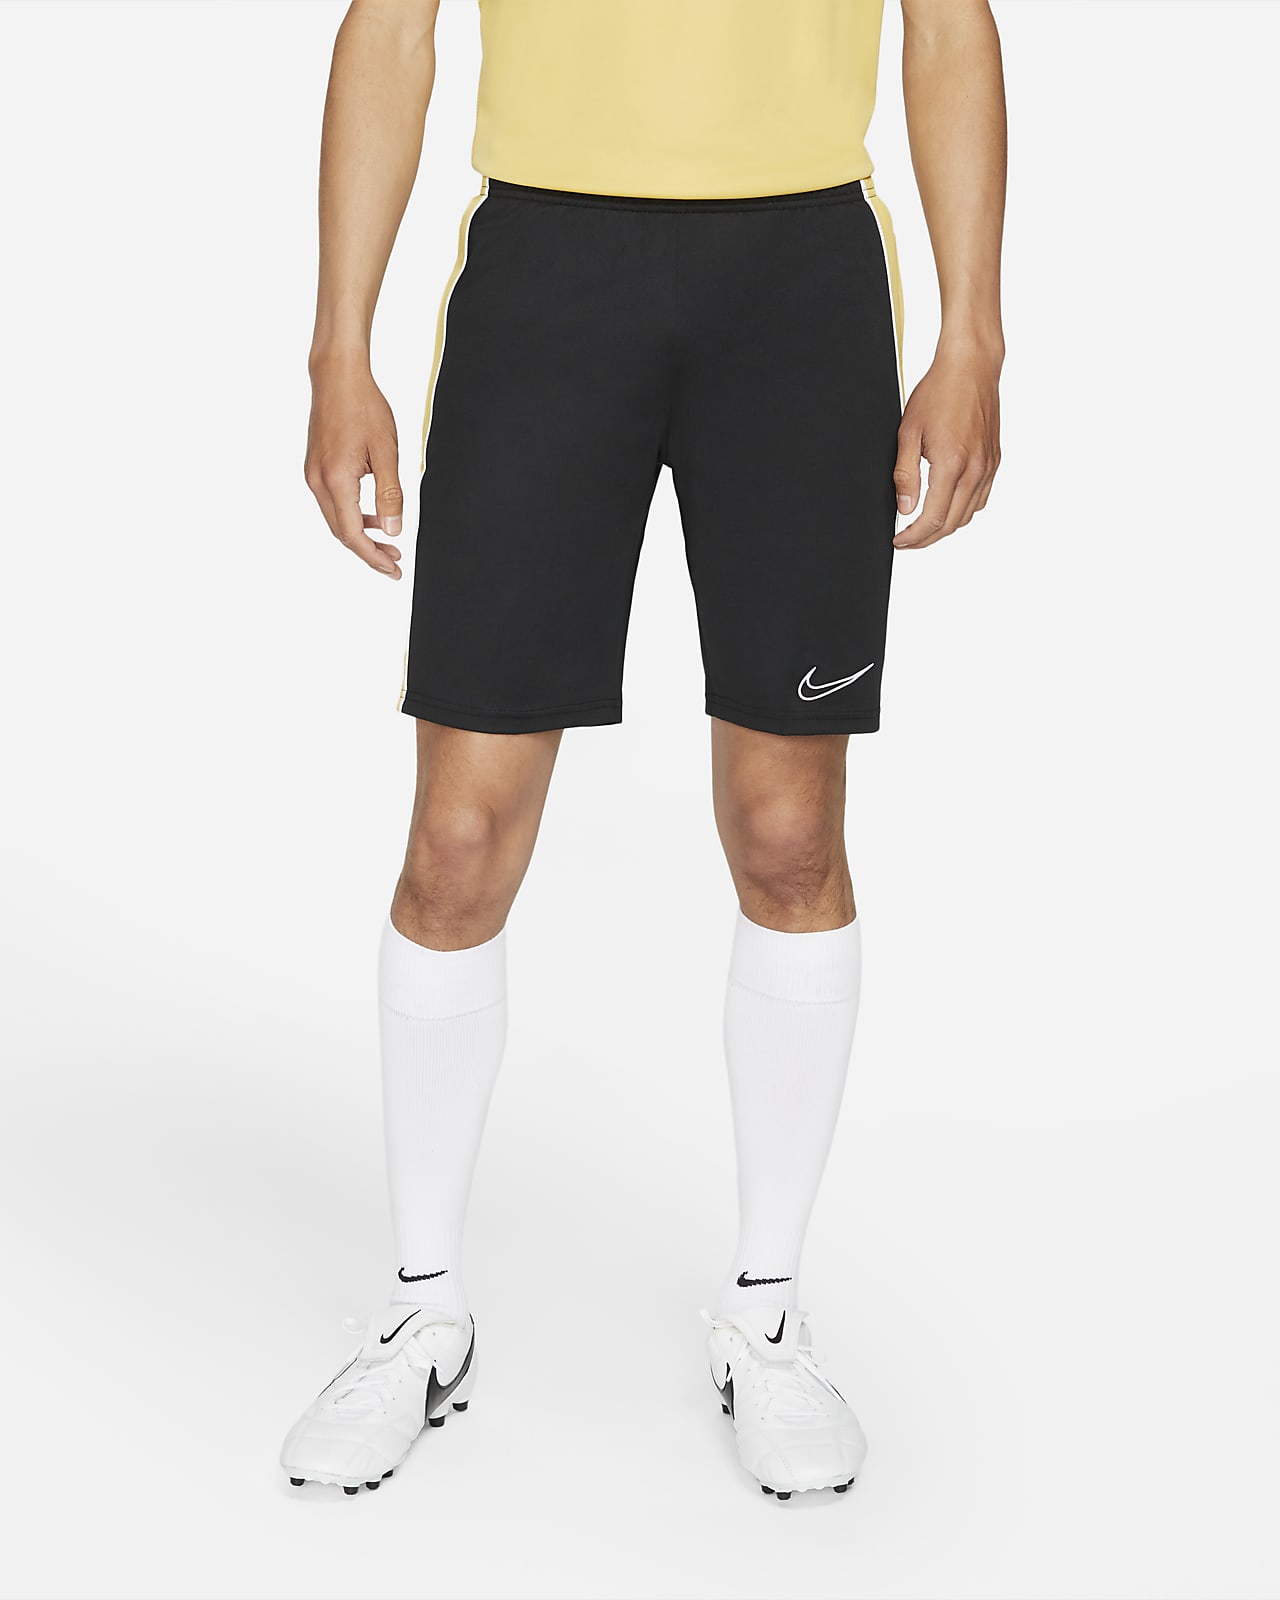 Nike公式 ナイキ Dri Fit アカデミー メンズ サッカーショートパンツ オンラインストア 通販サイト